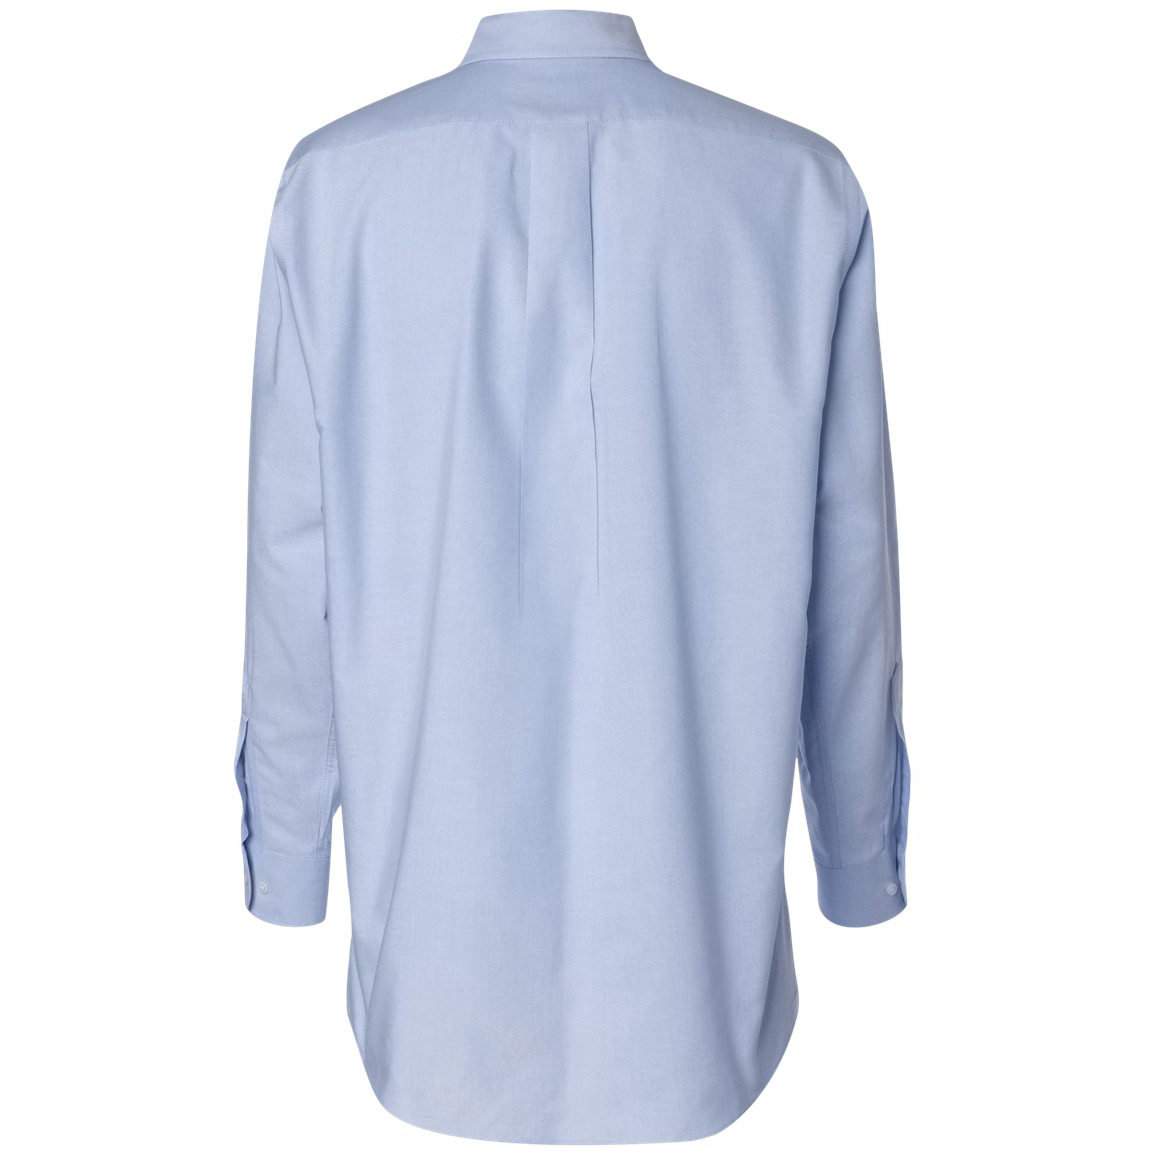 Van Heusen 13V0040 Long Sleeve Oxford Shirt - Light Blue | Full Source